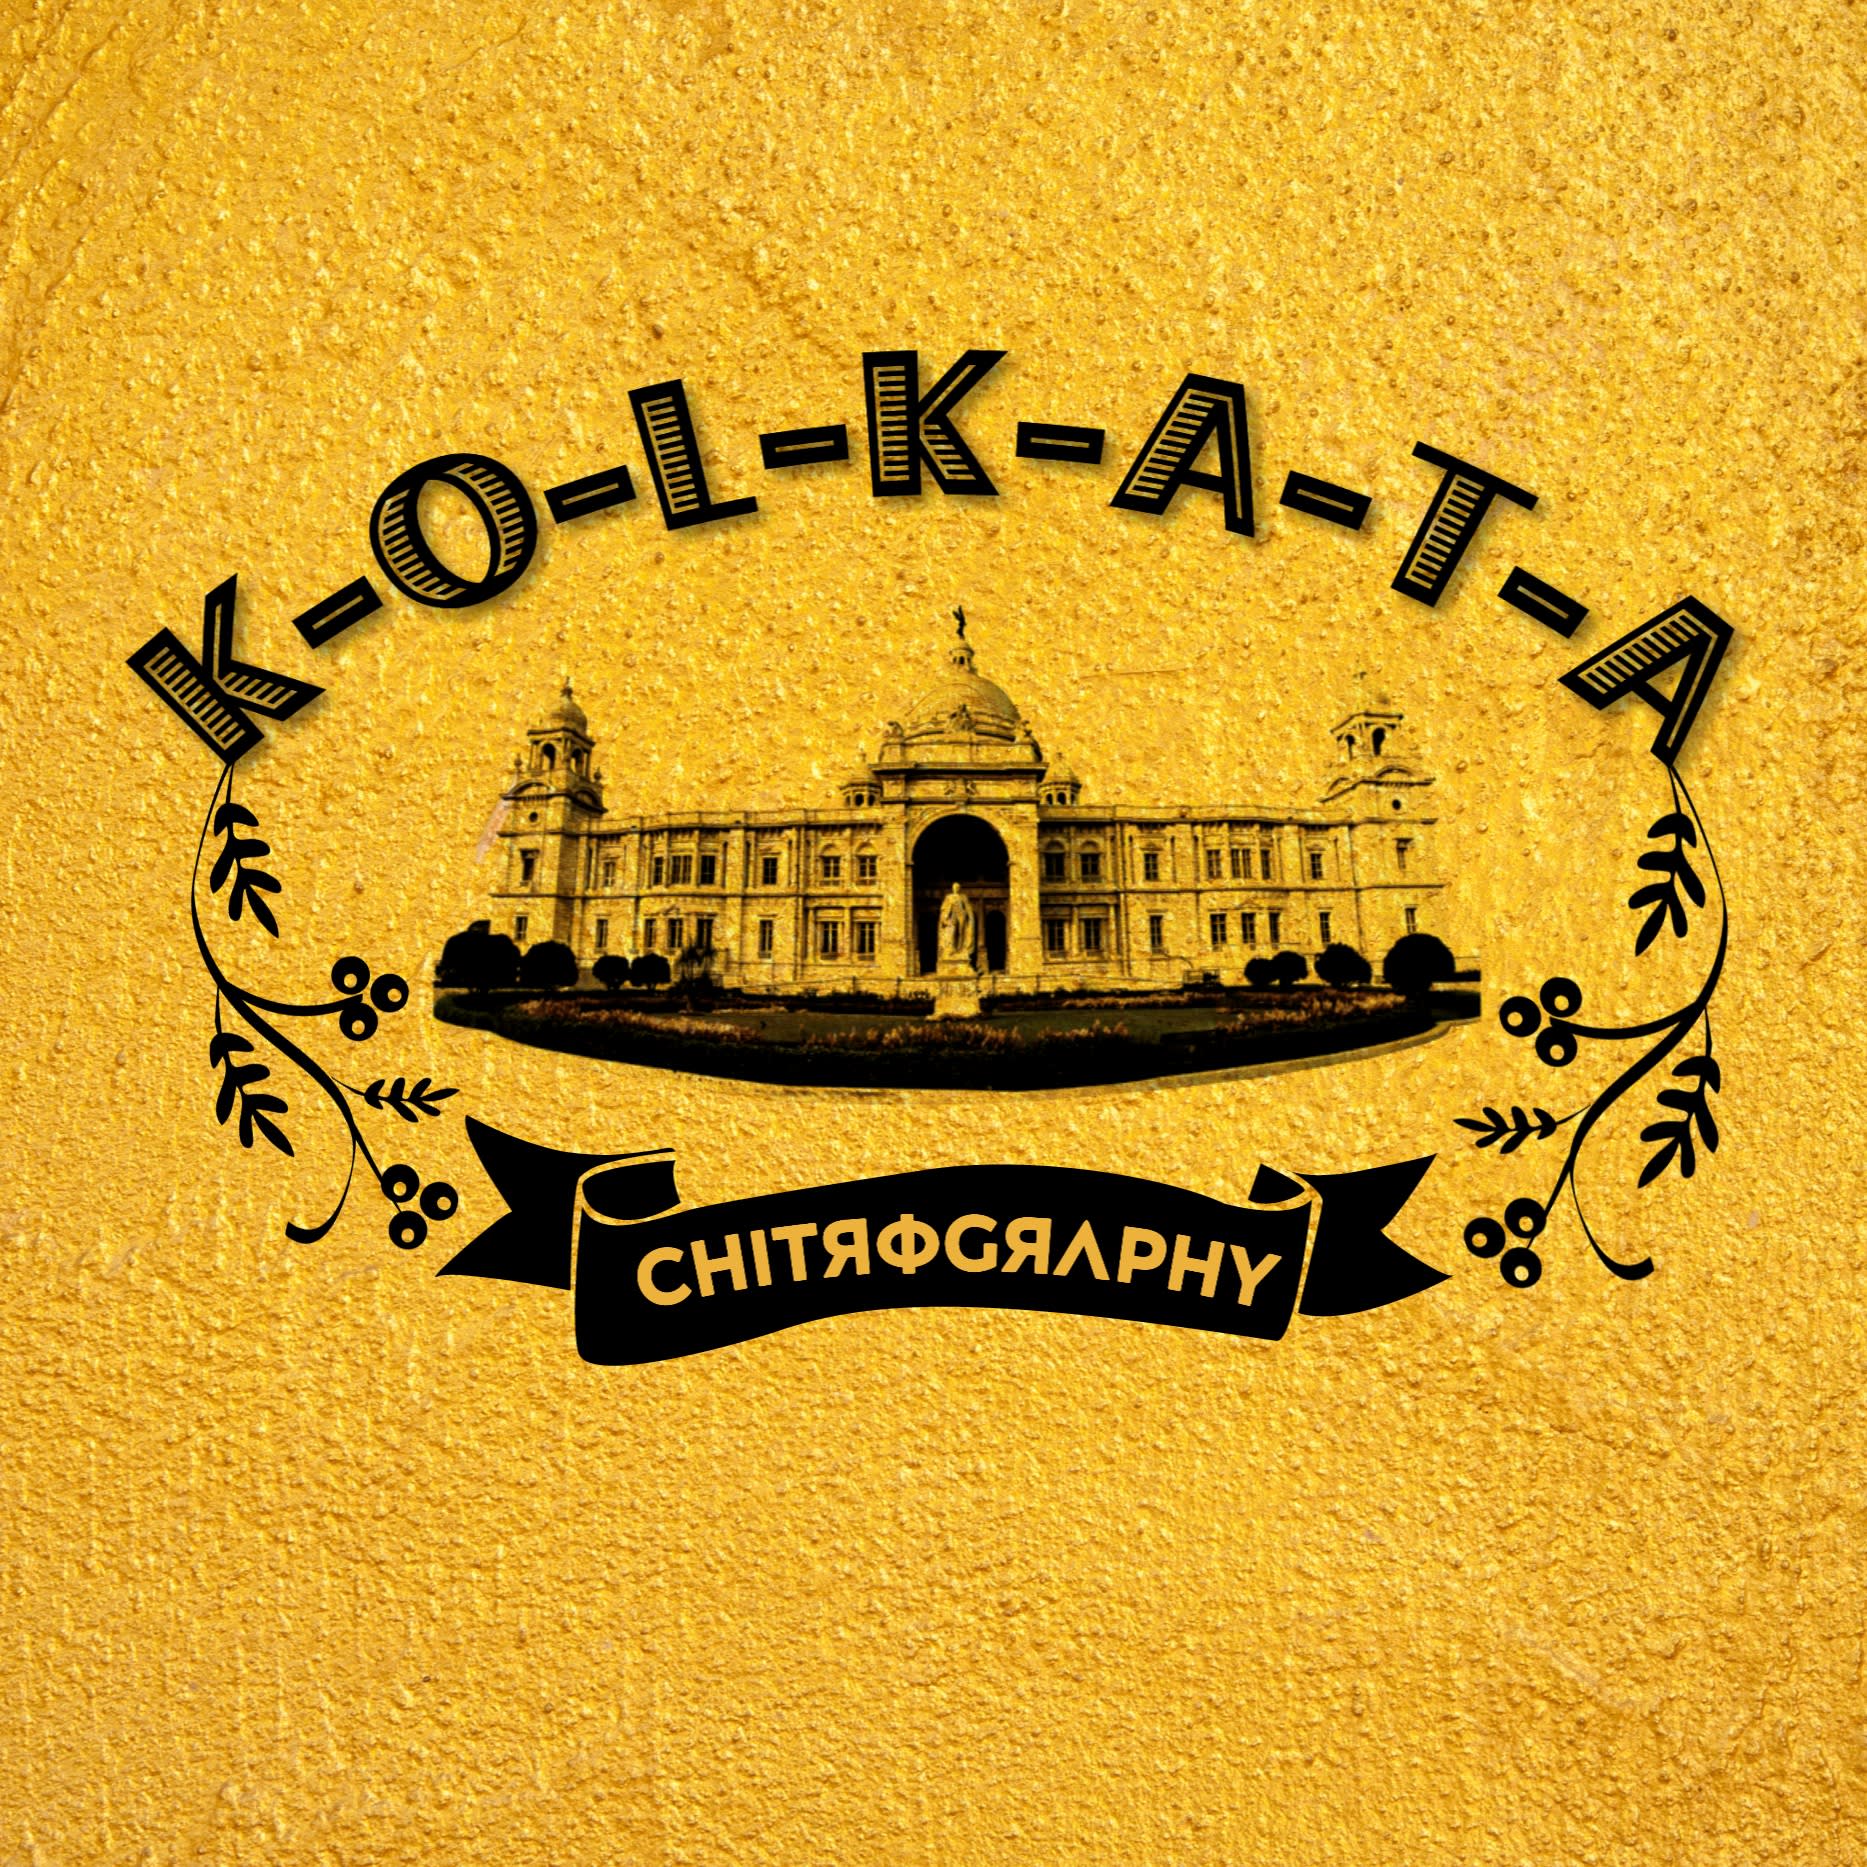 Kolkata Chitrography